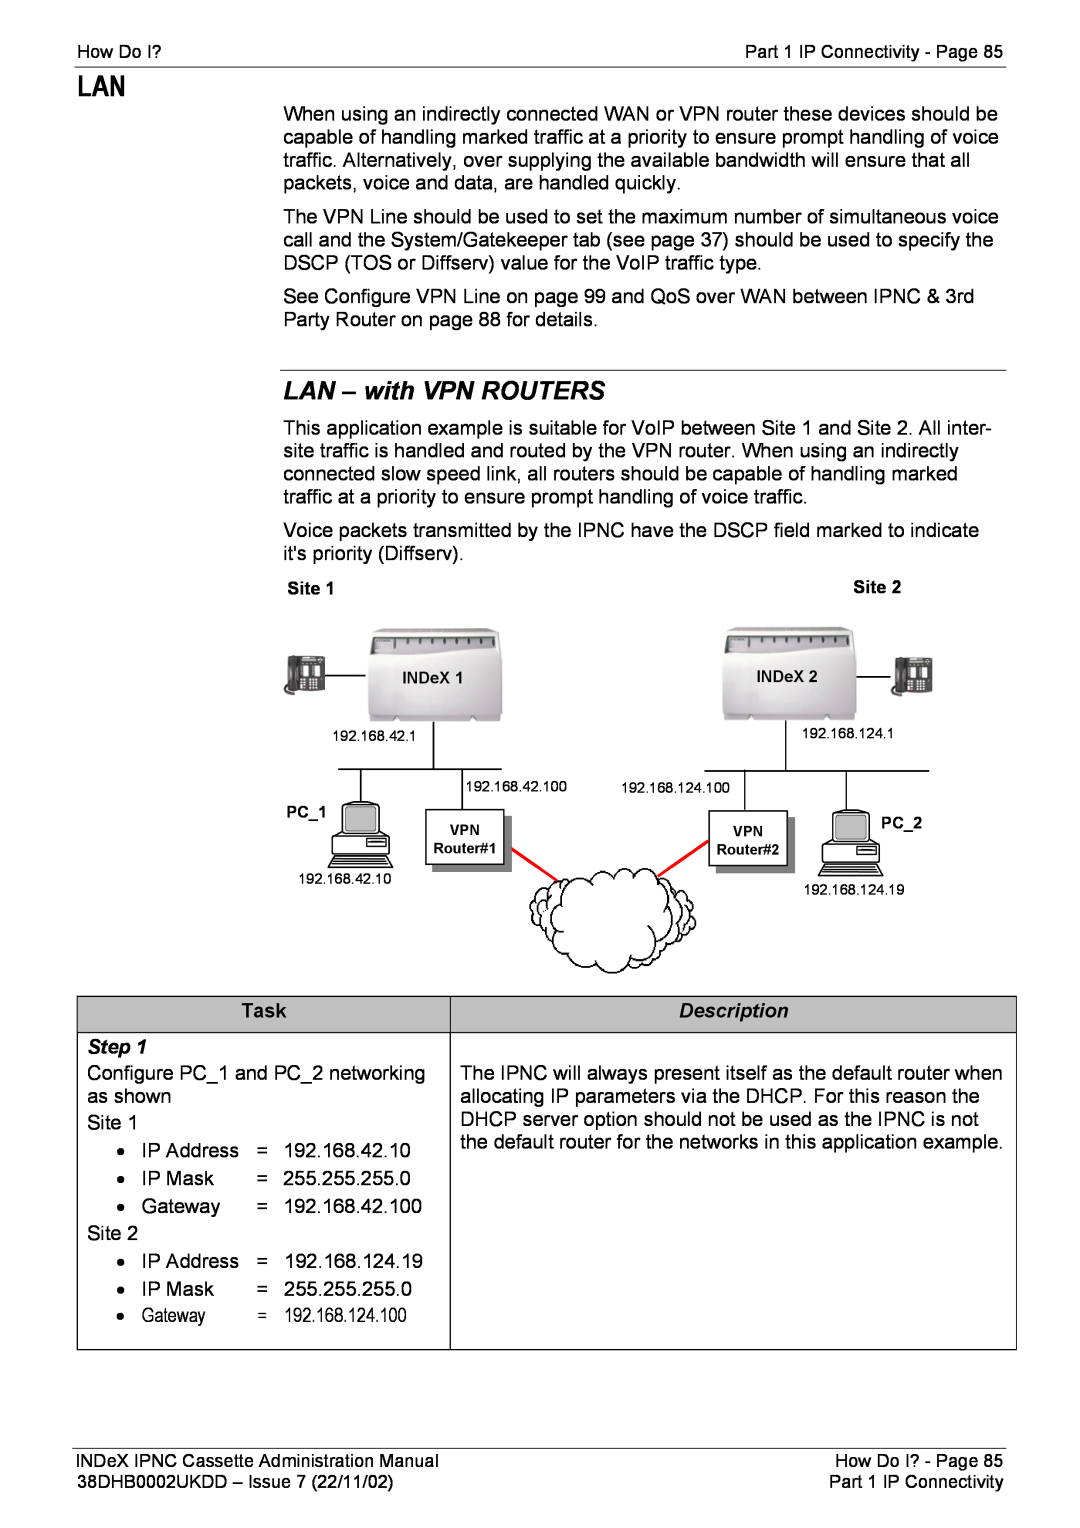 Avaya 38DHB0002UKDD manual LAN - with VPN ROUTERS, Task 